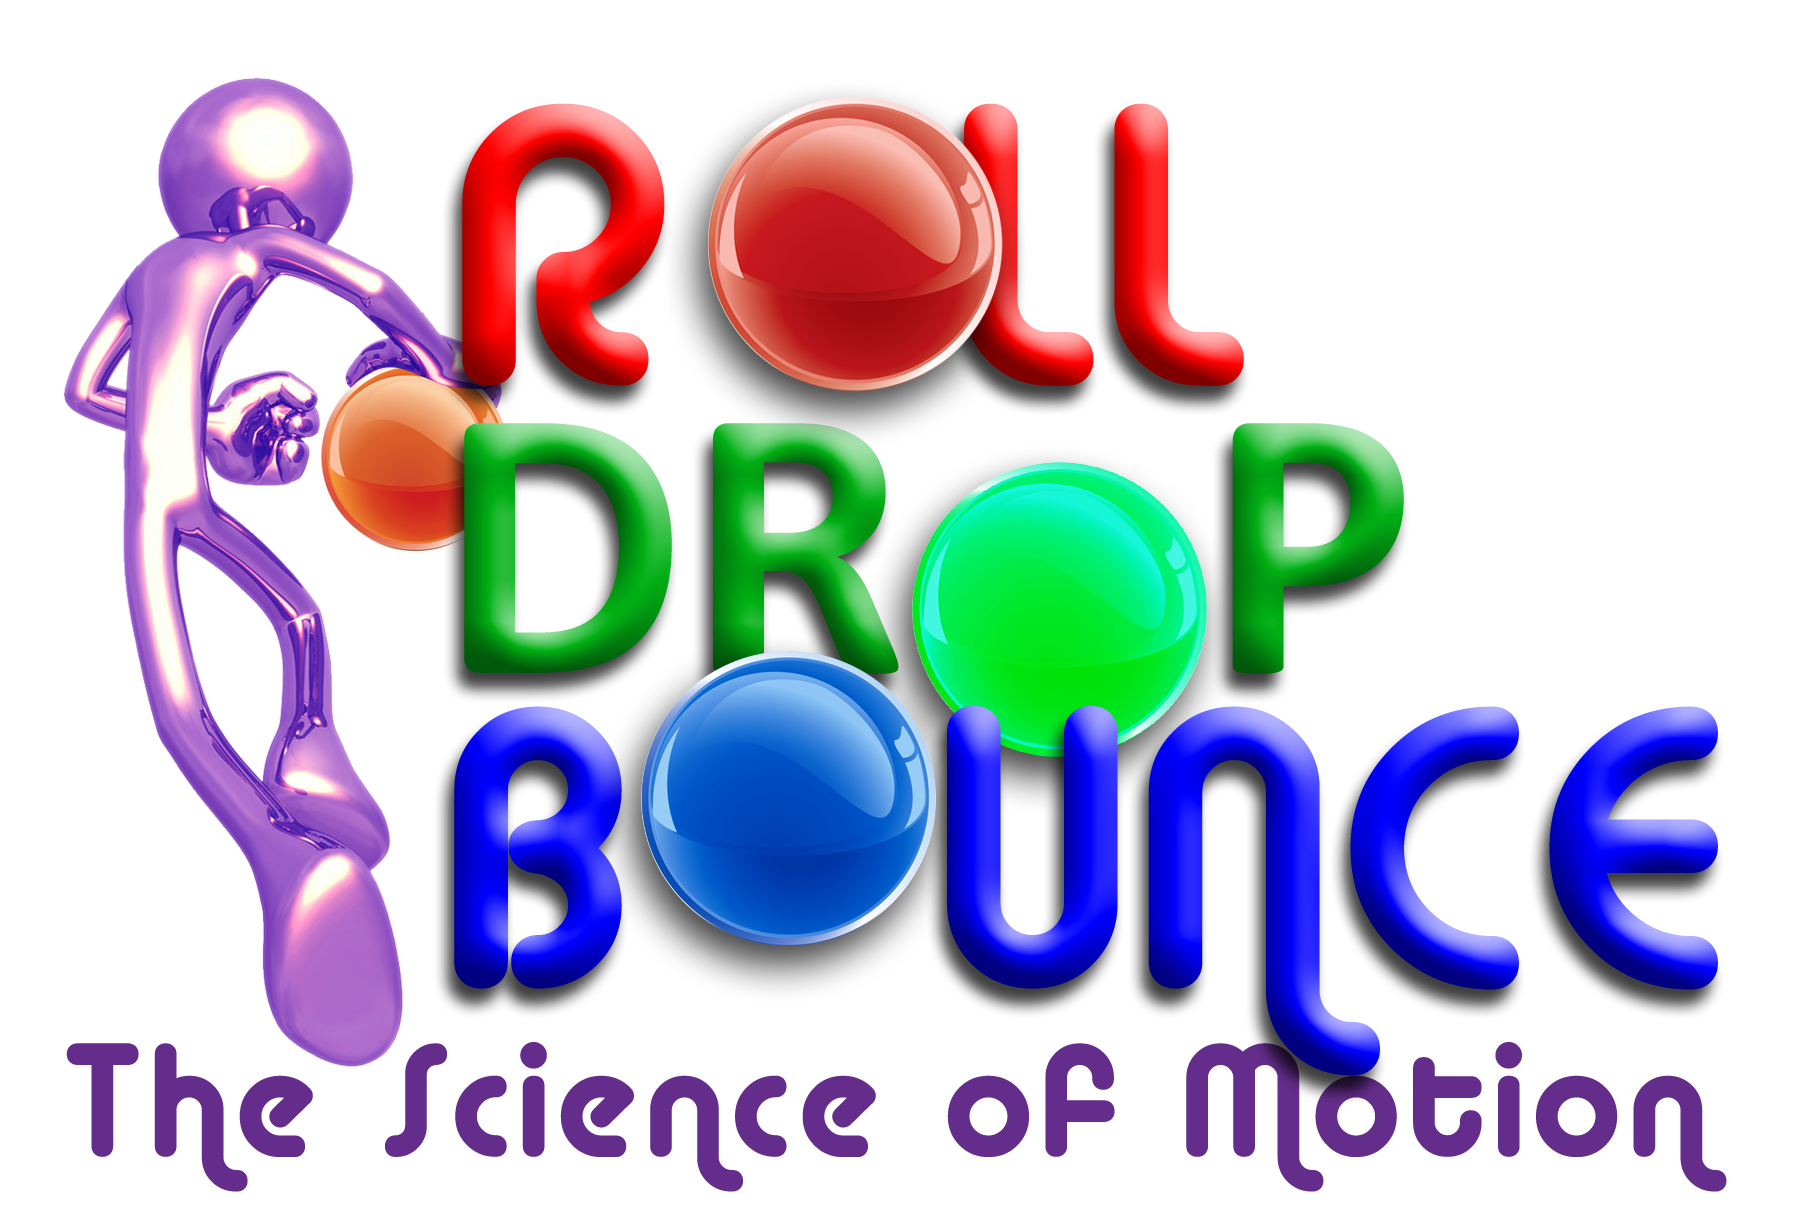 Roll Drop Bounce logo